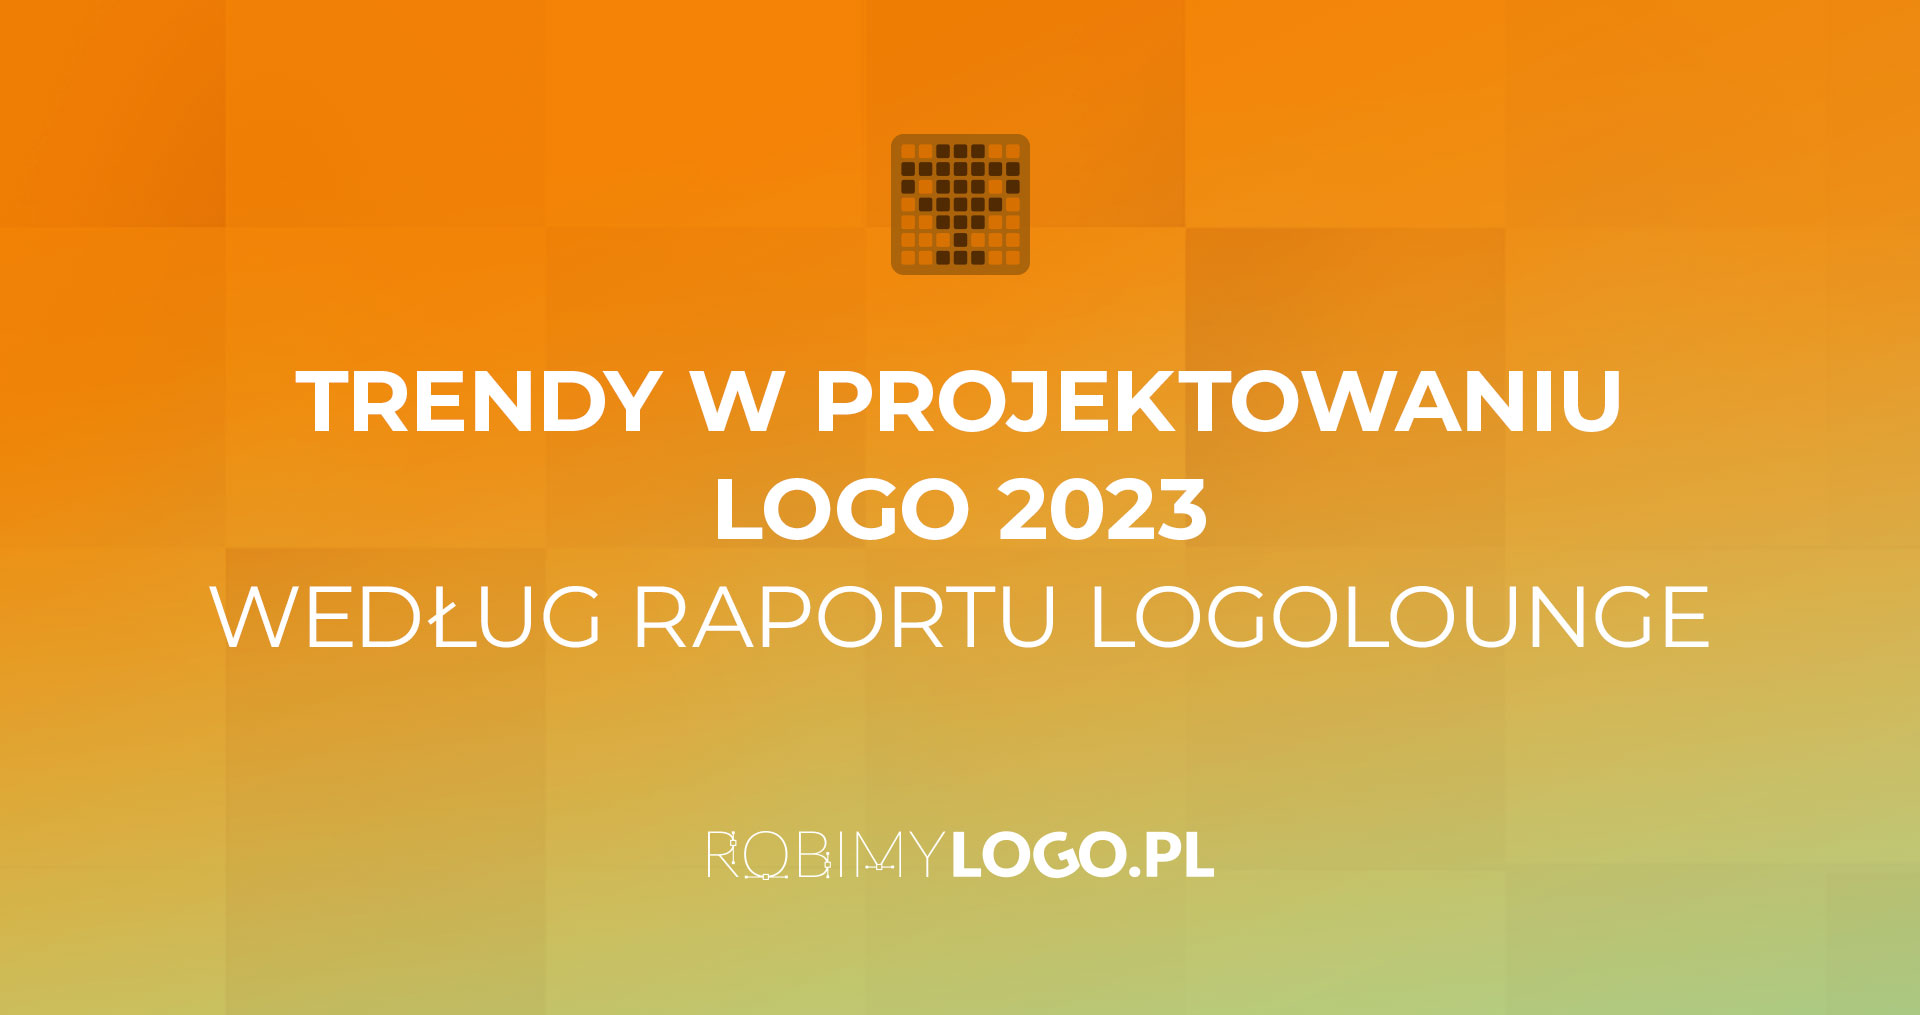 Trendy w projektowaniu logo 2023 według raportu LogoLounge